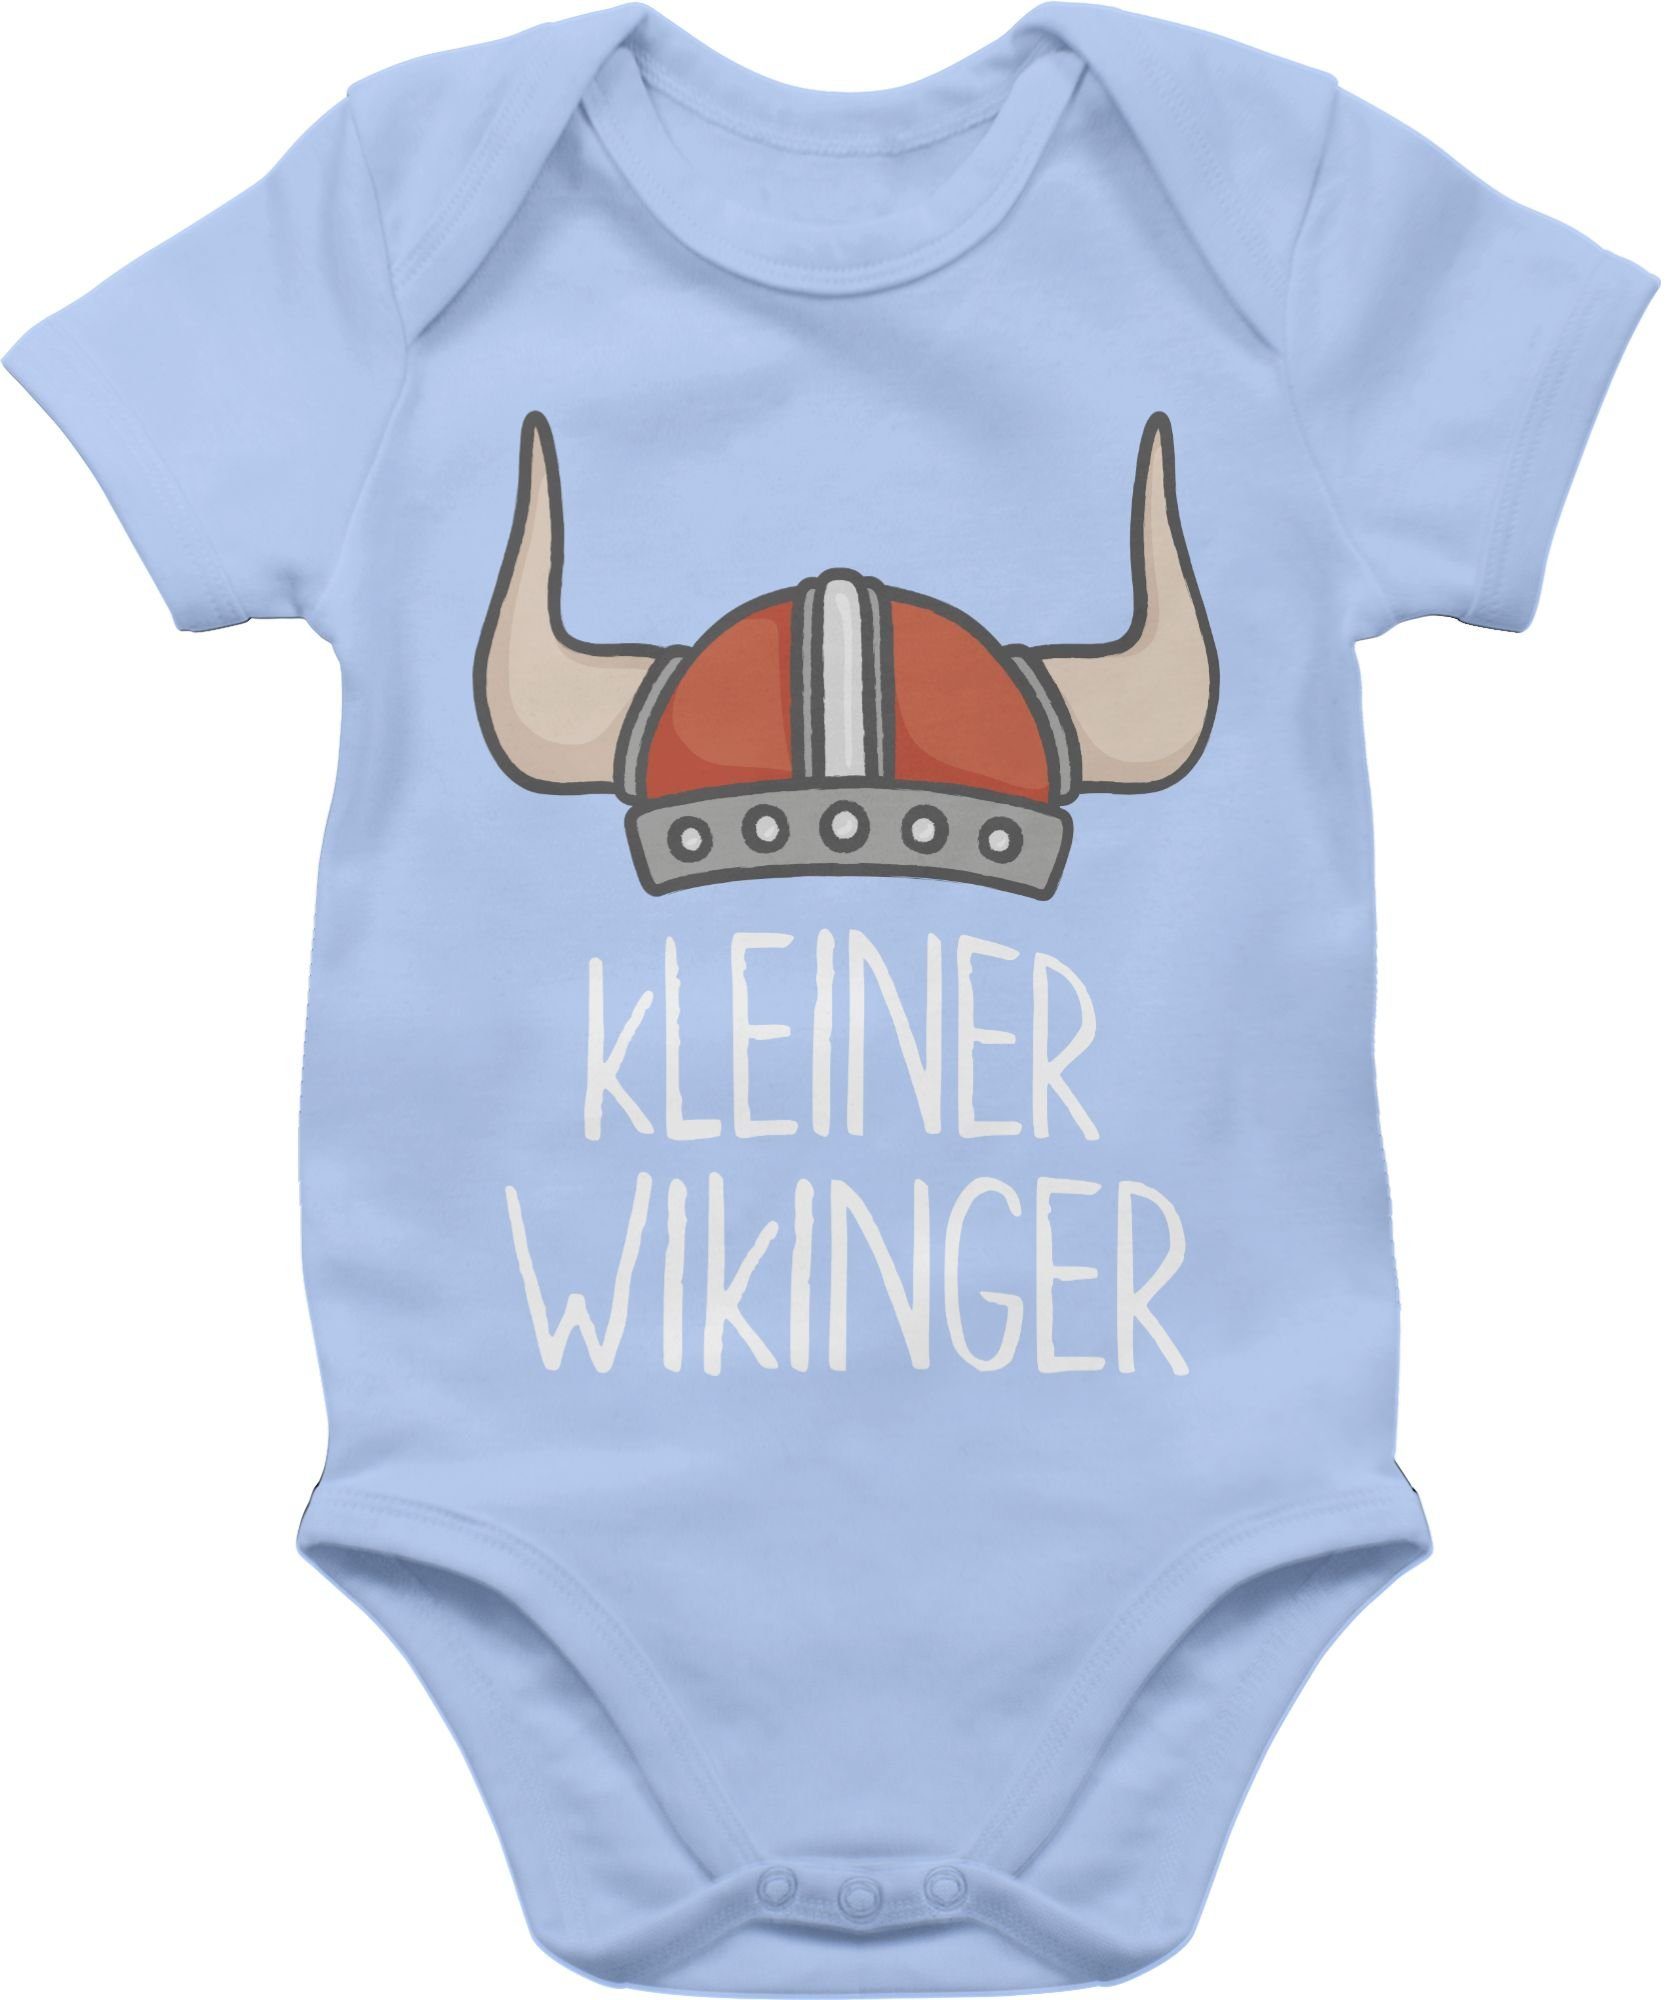 Shirtracer Shirtbody kleiner Wikinger weiß Wikinger & Walhalla Baby 3 Babyblau